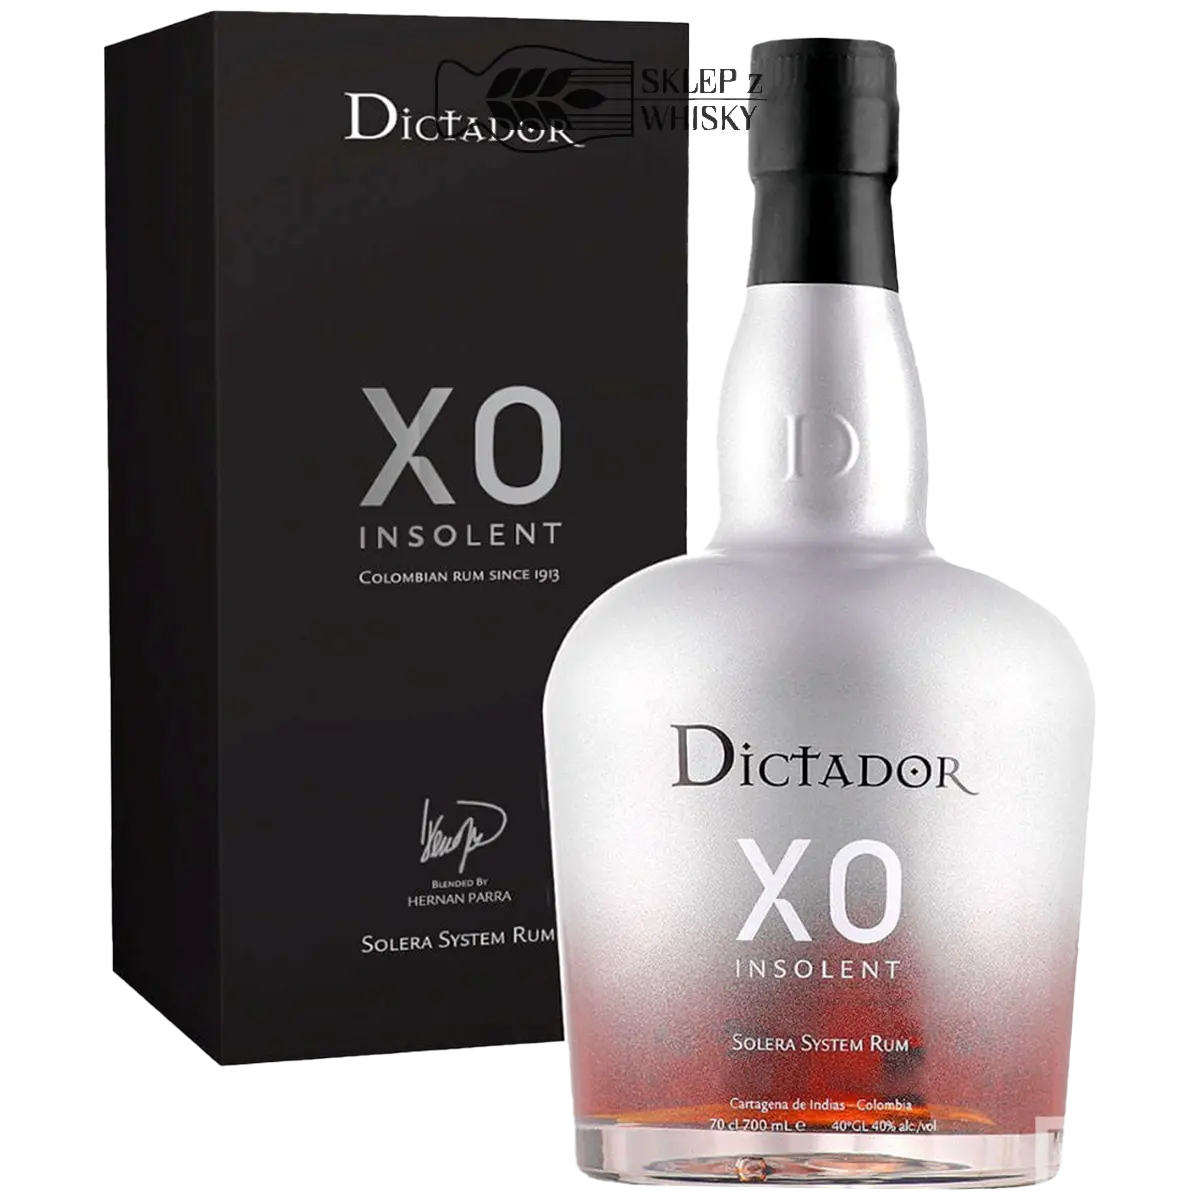 Dictador XO Insolent - kolumbijski rum, 700 ml, w pudełku